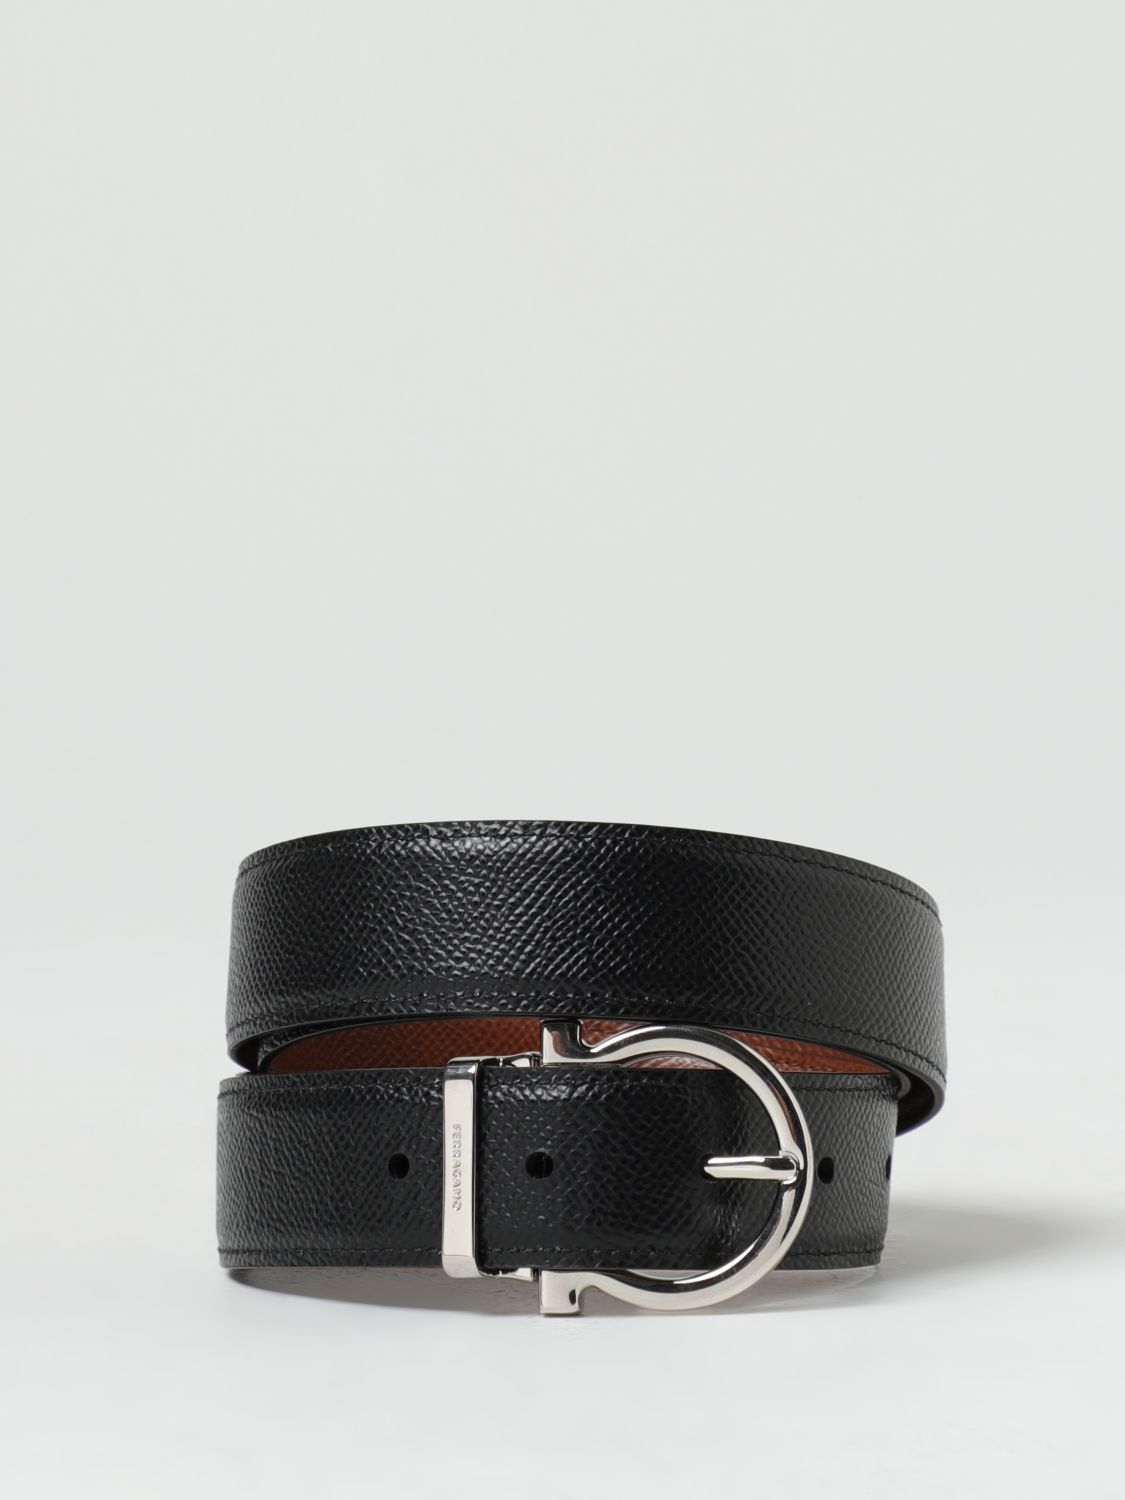 Ferragamo, Grained leather silver buckle reversible belt